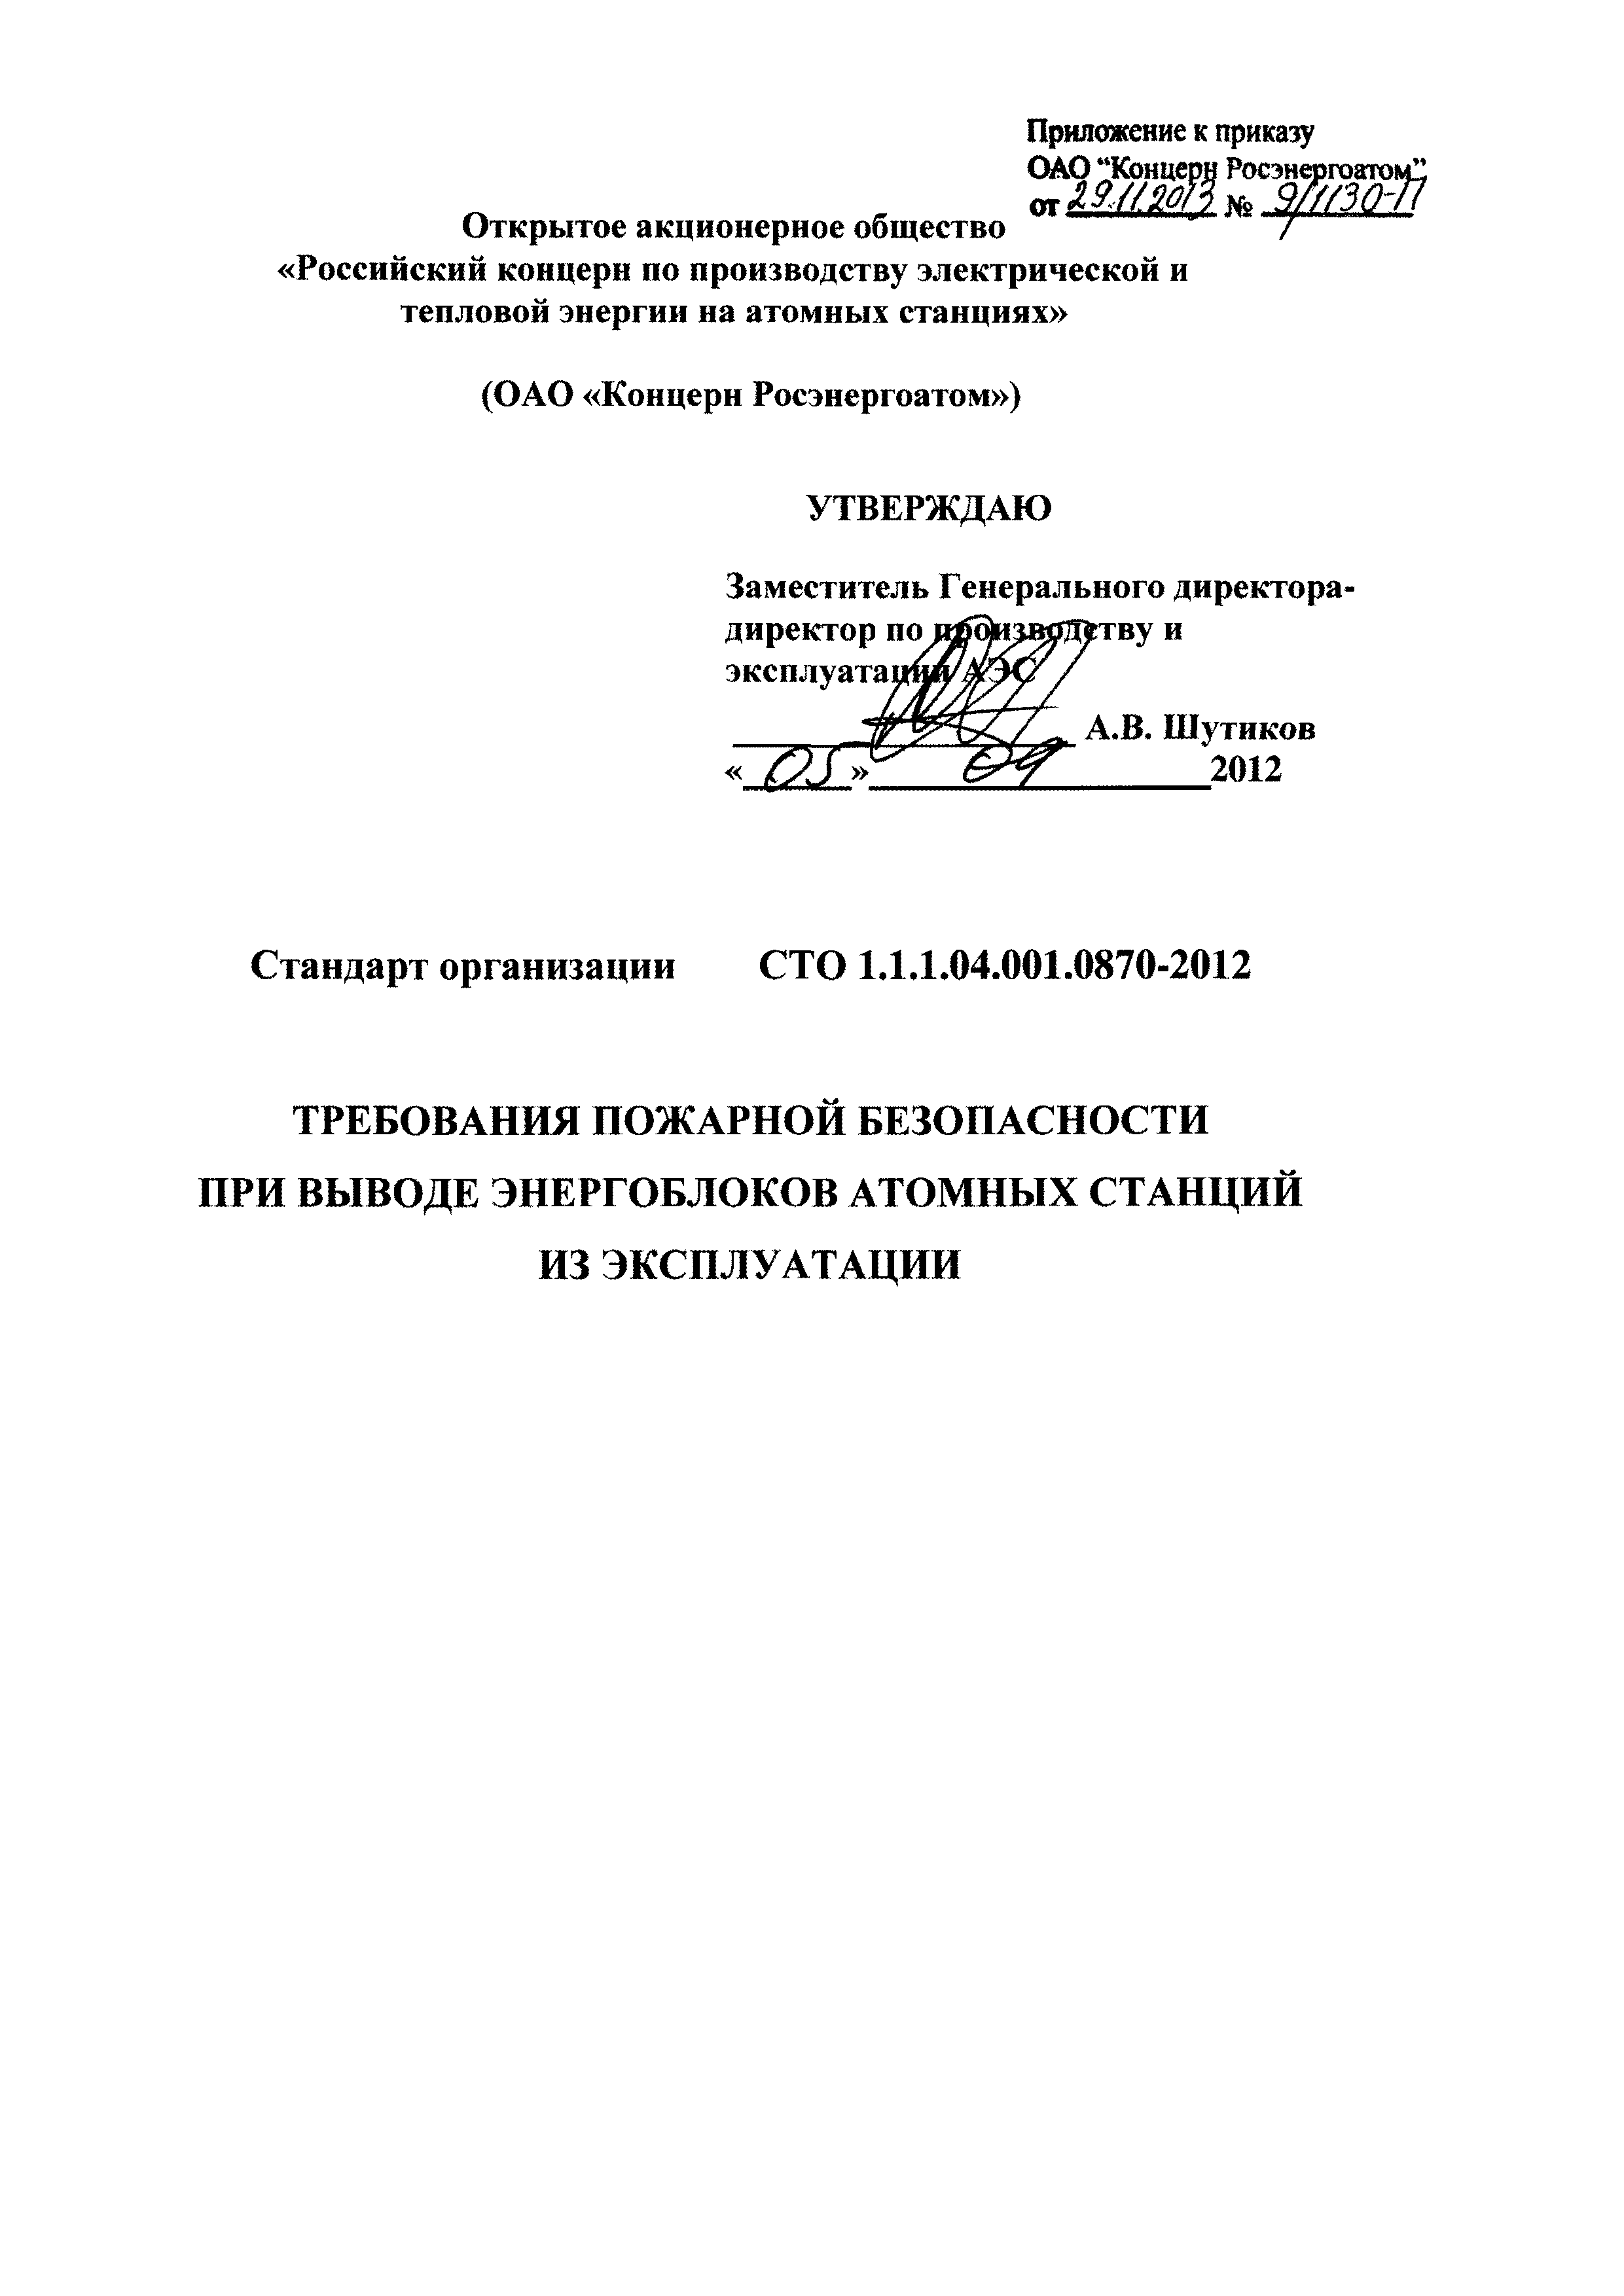 СТО 1.1.1.04.001.0870-2012